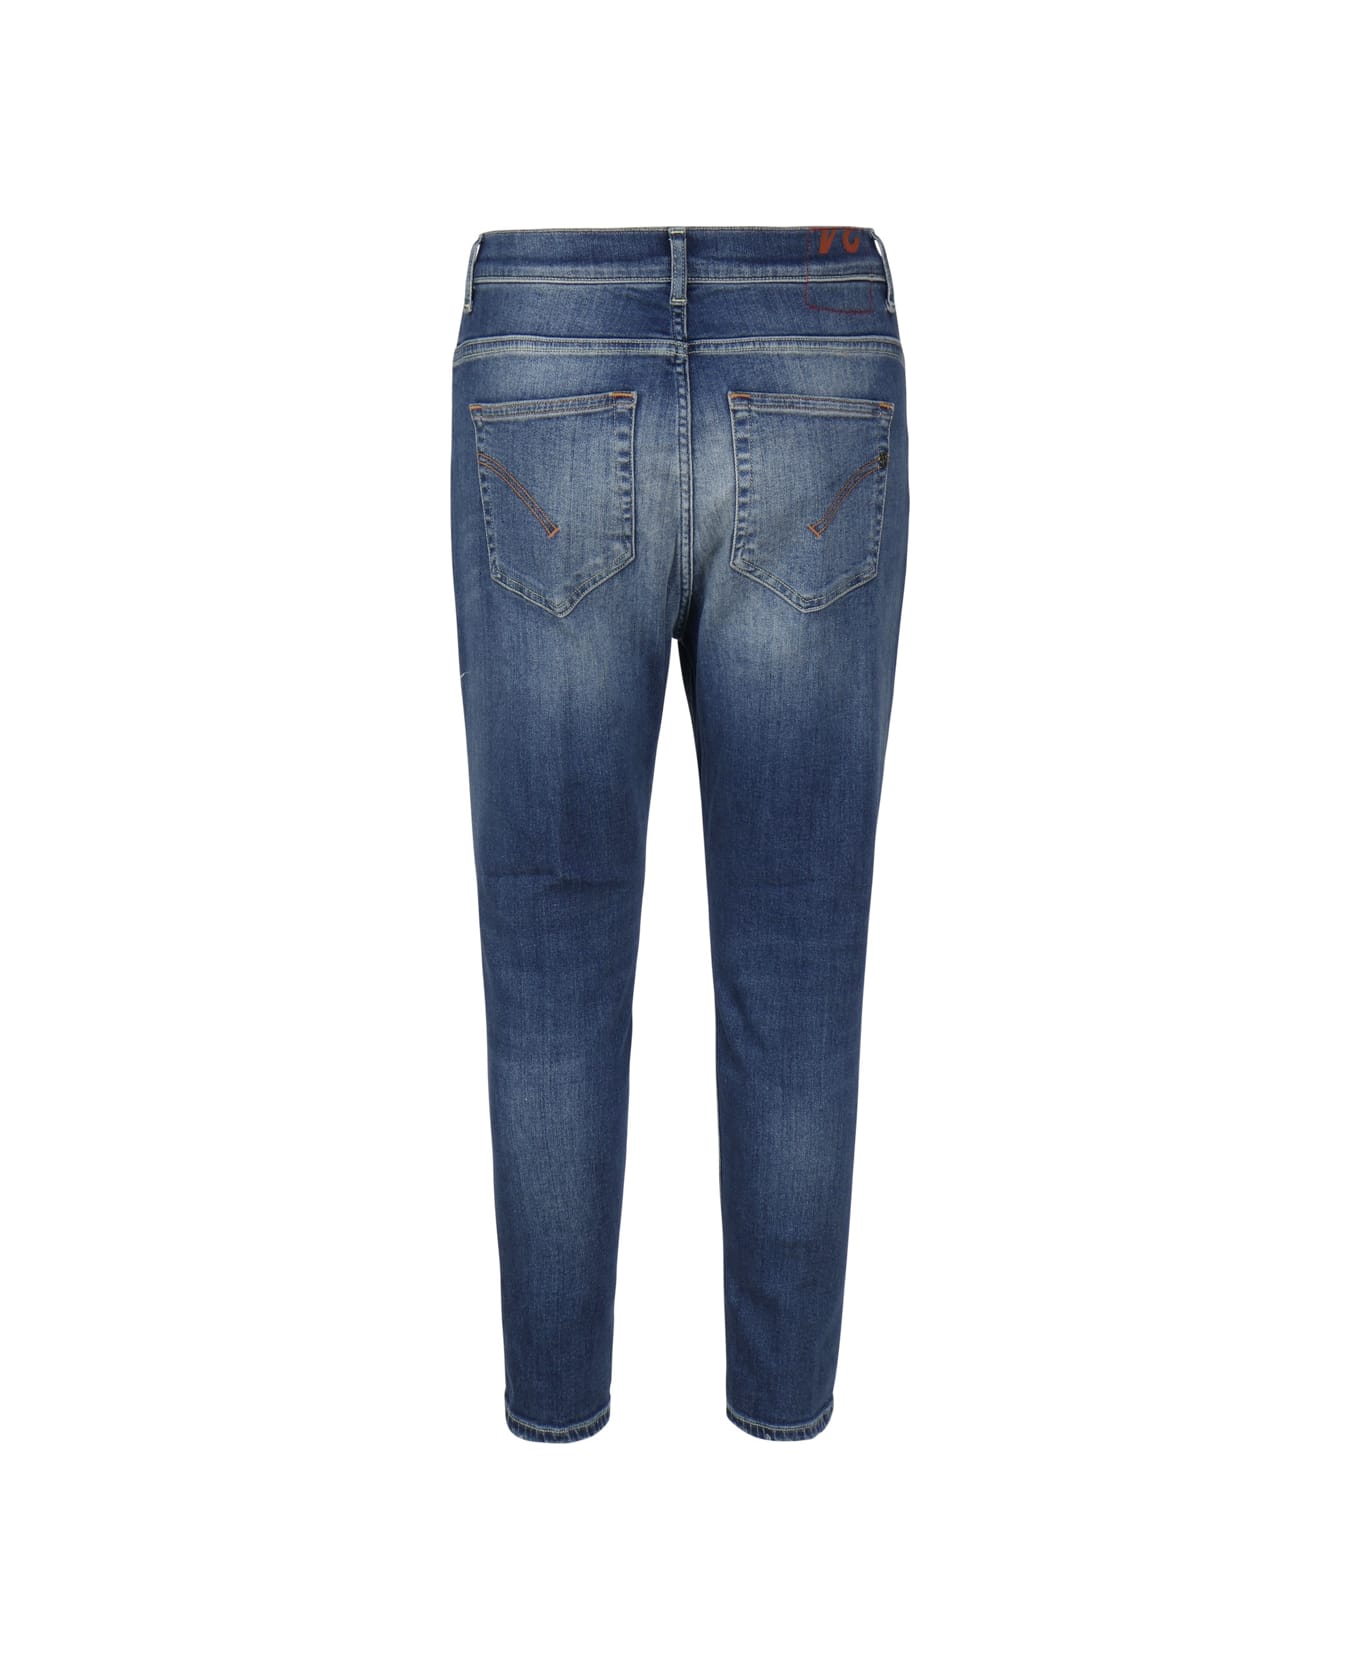 Dondup Alex Super Skinny Jeans In Stretch Denim - Blue